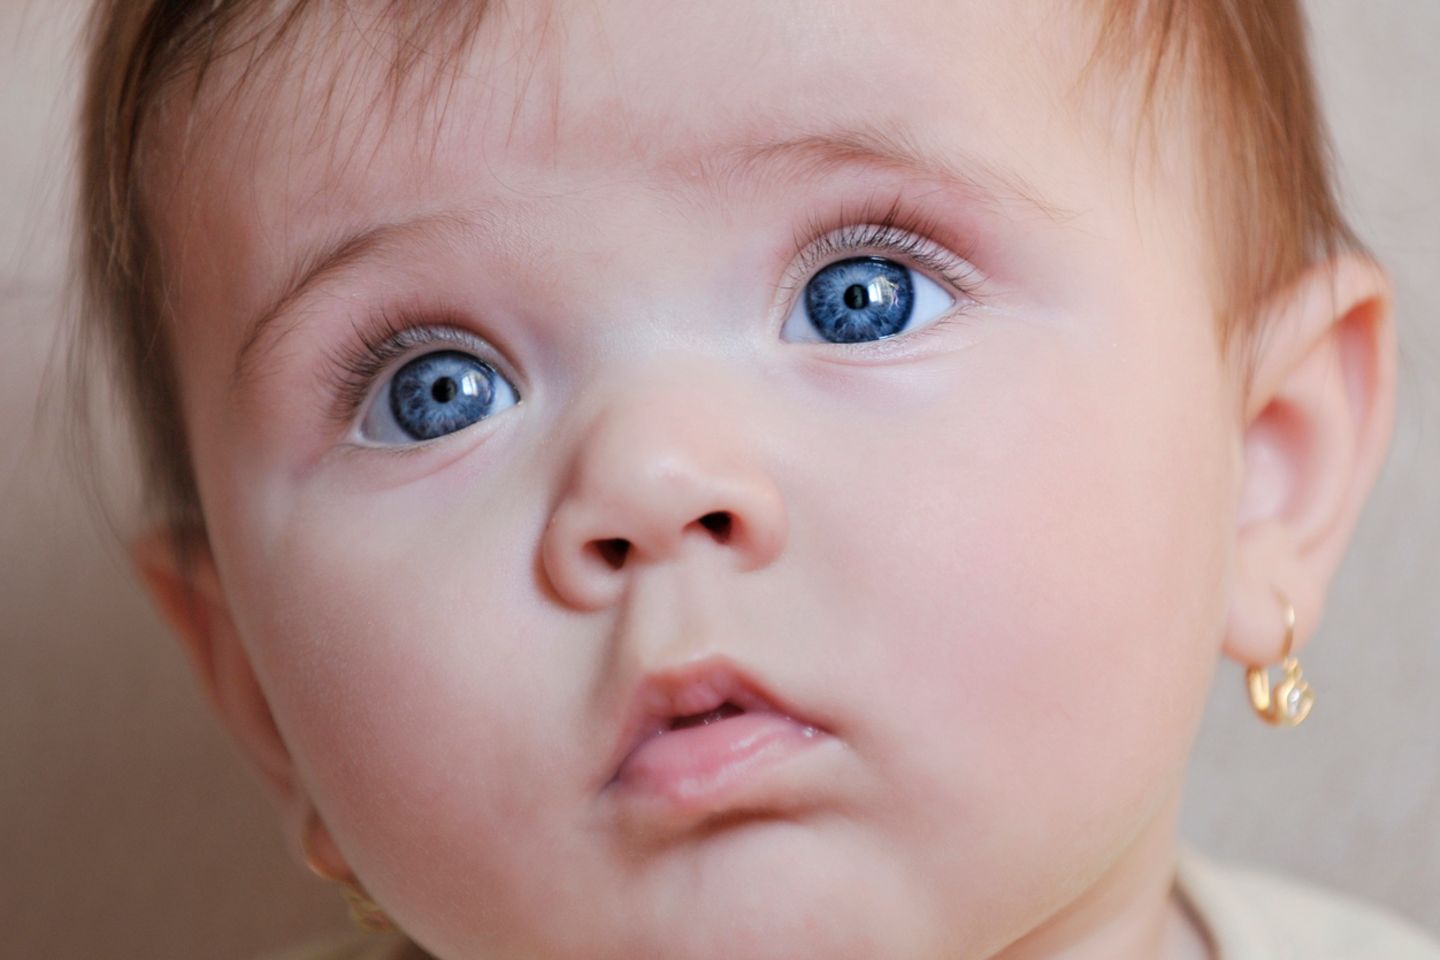 Ohrringe für Babys: Ohrlöcher stechen bei Babys: Hübsch oder Körperverletzung?